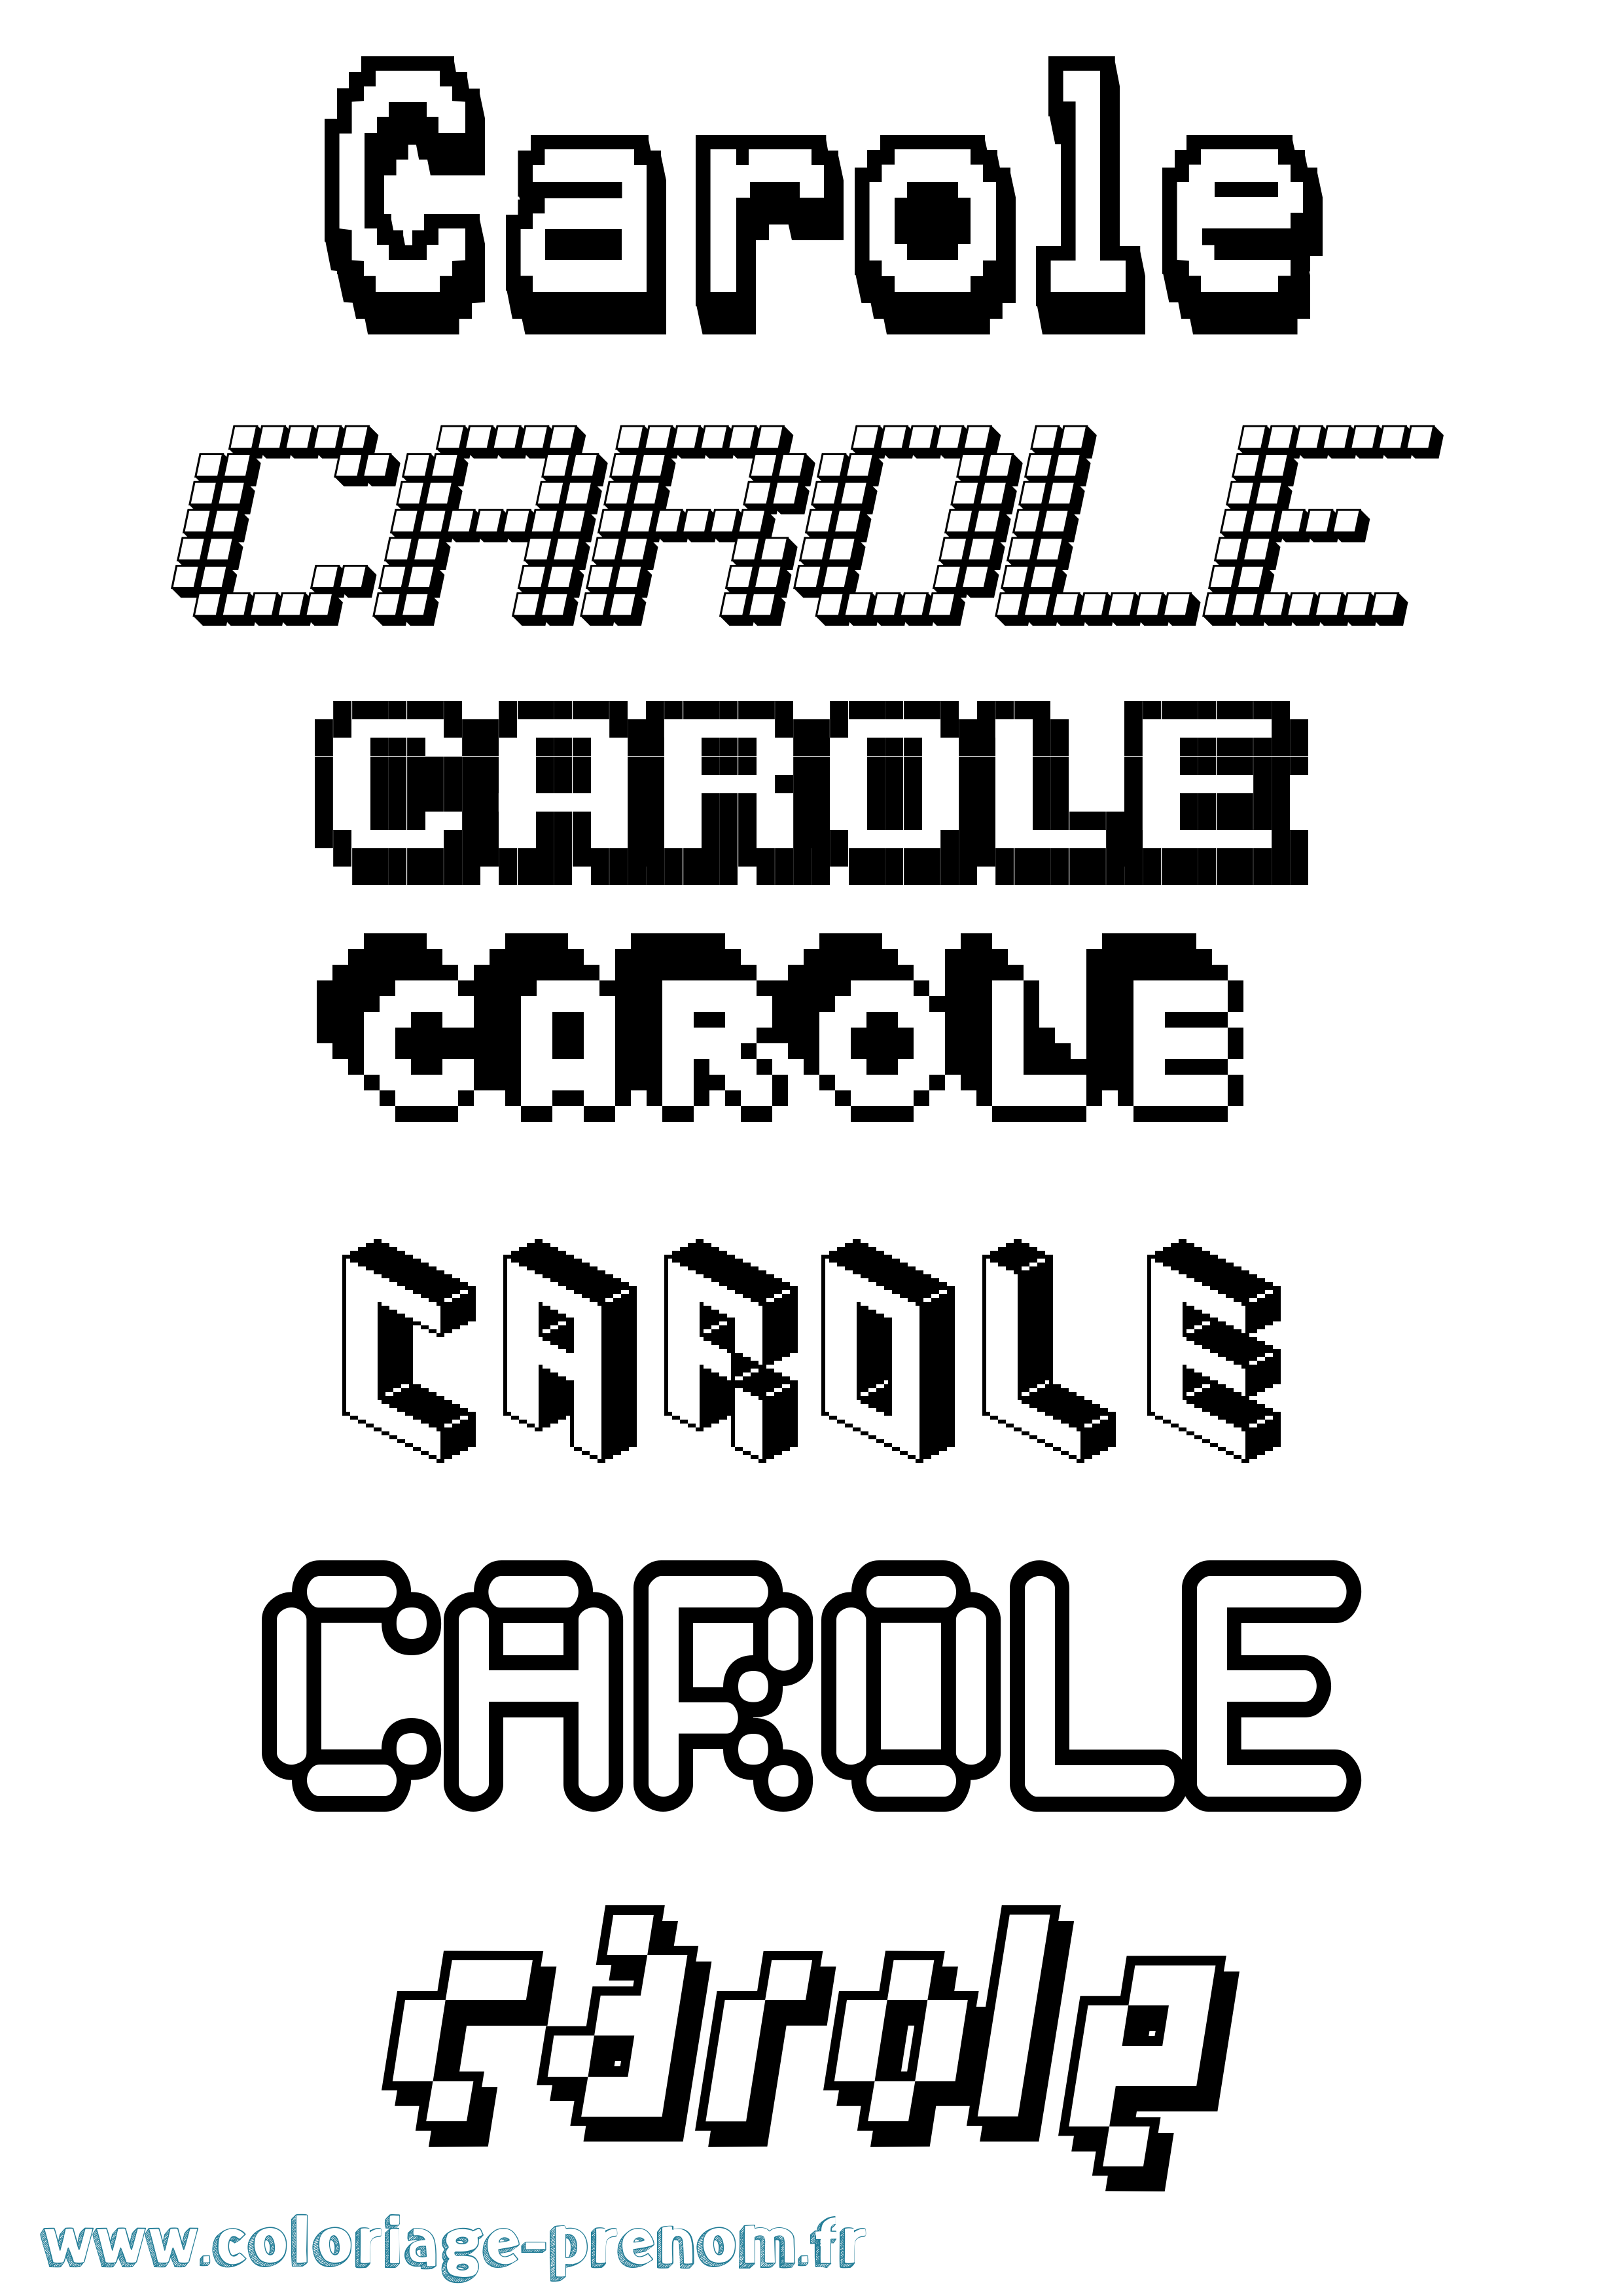 Coloriage prénom Carole Pixel